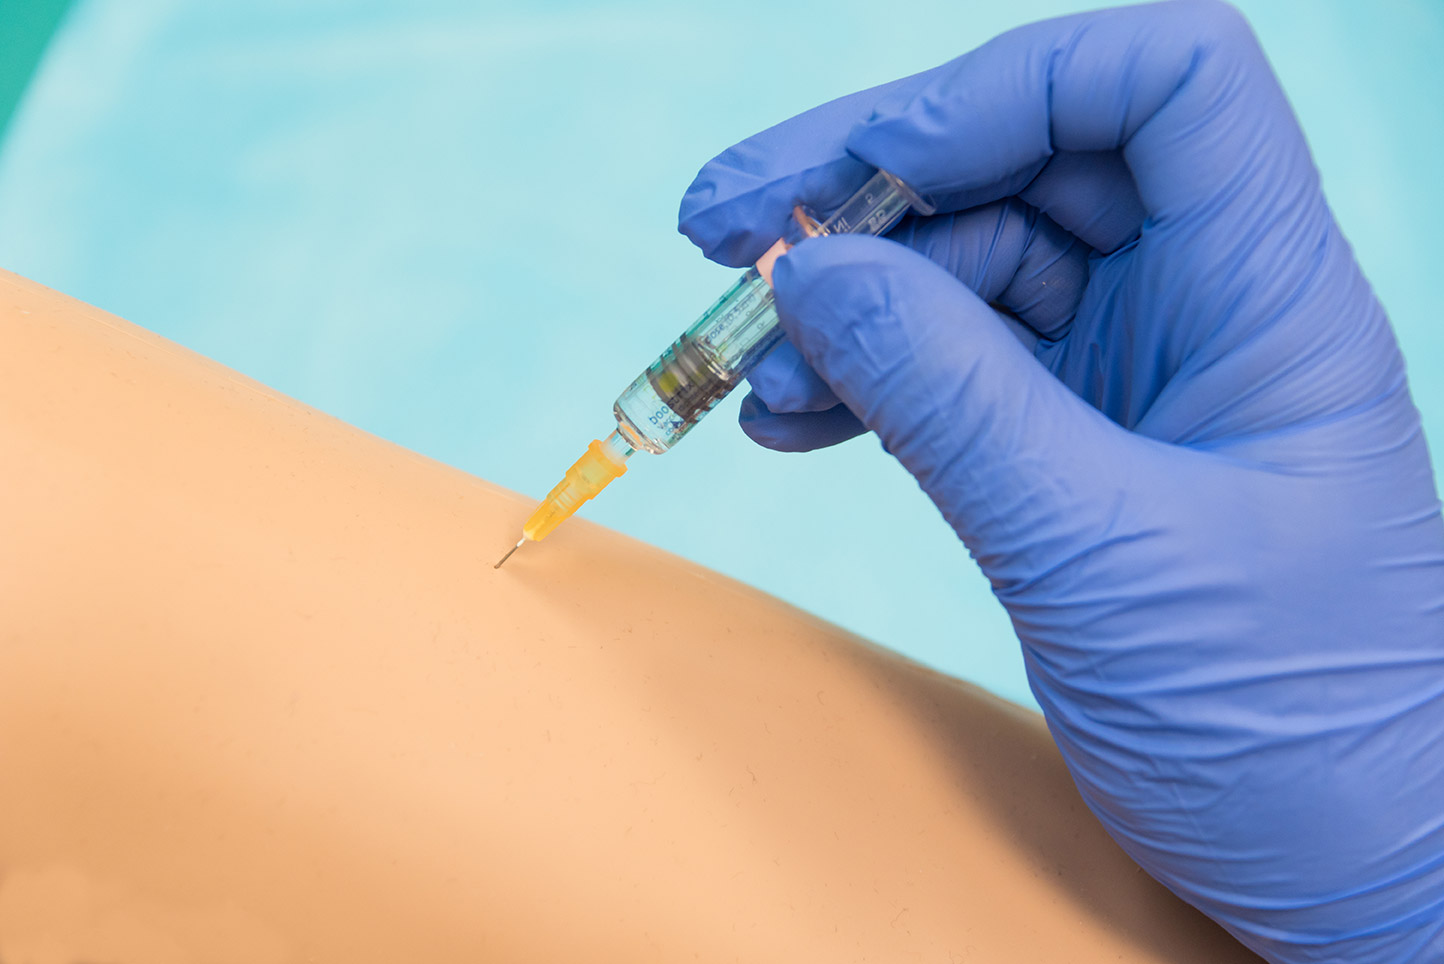 La formation vise à préparer les professionnels habilités à réaliser la vaccination.